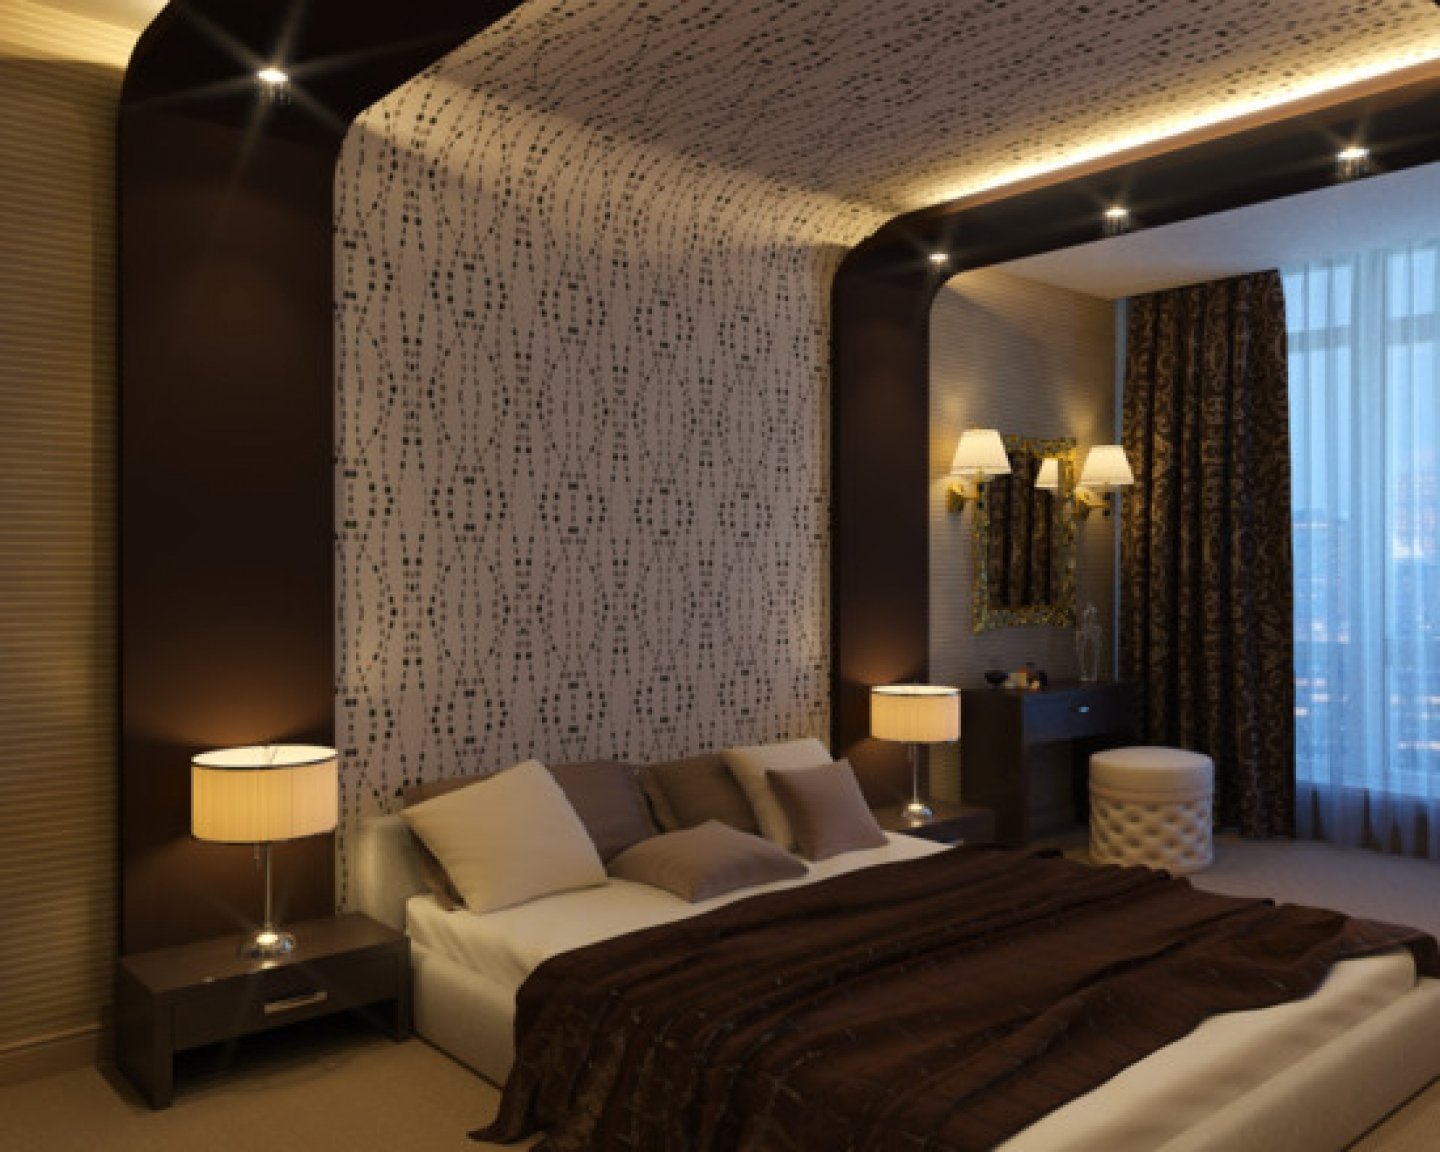 Дизайн потолка в спальне: фото-идей оформления потолка